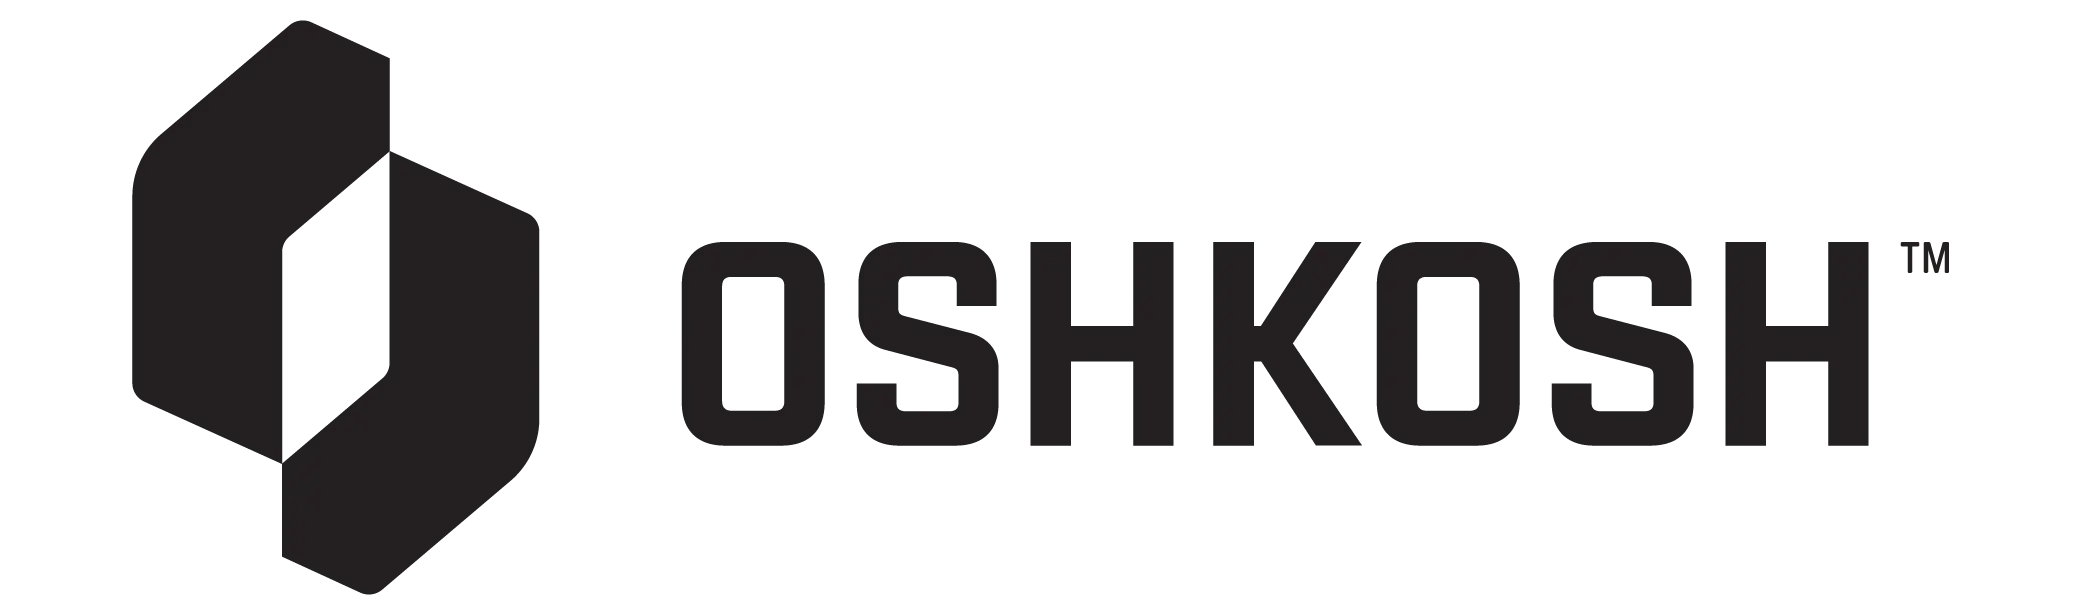 Oshkosh